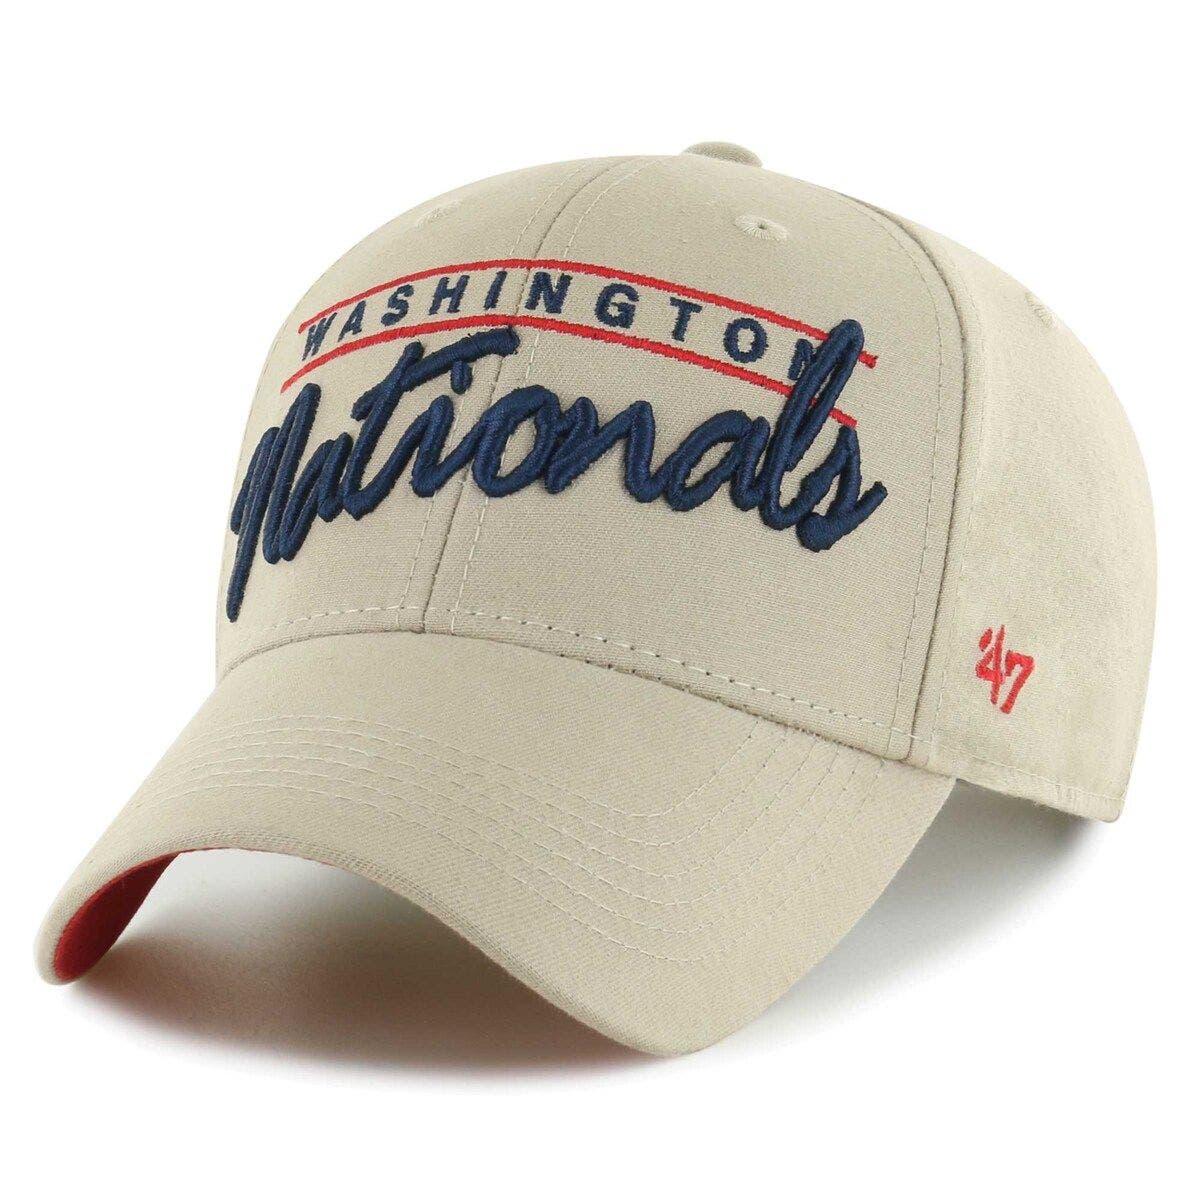 47 Men's Washington Nationals Red Clean Up Adjustable Hat